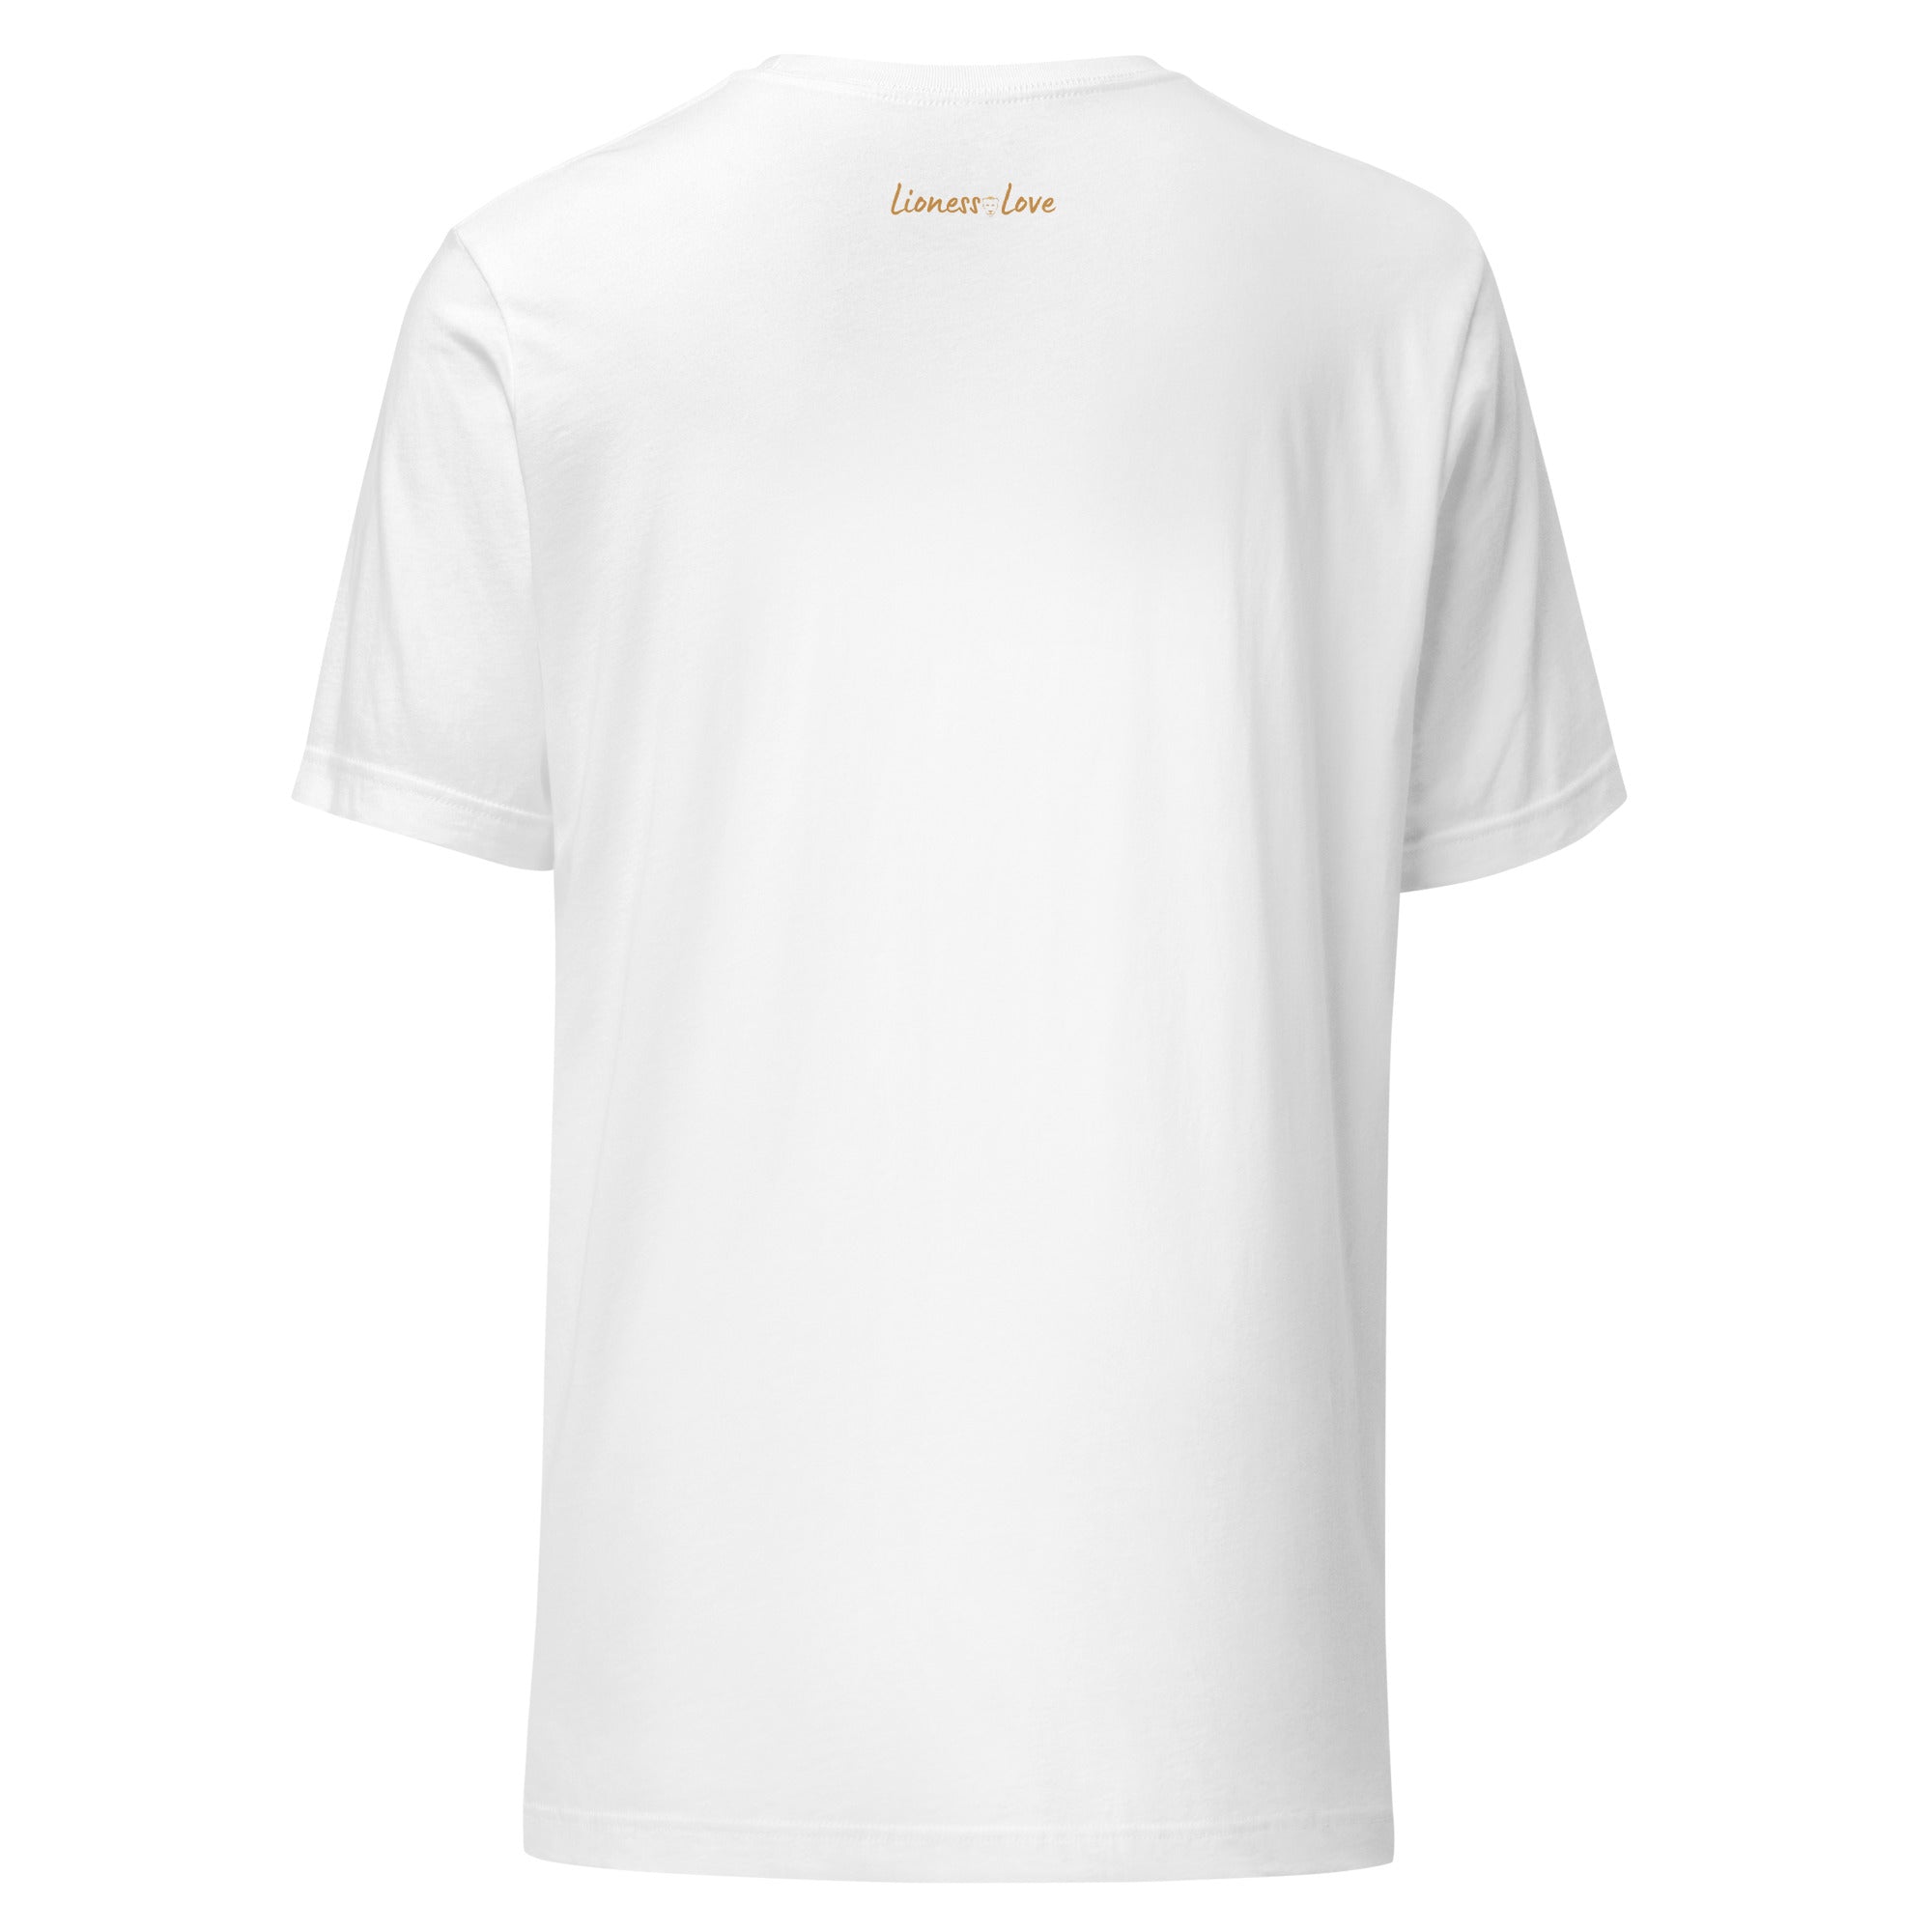 Cotton Graphic t shirt for men & women